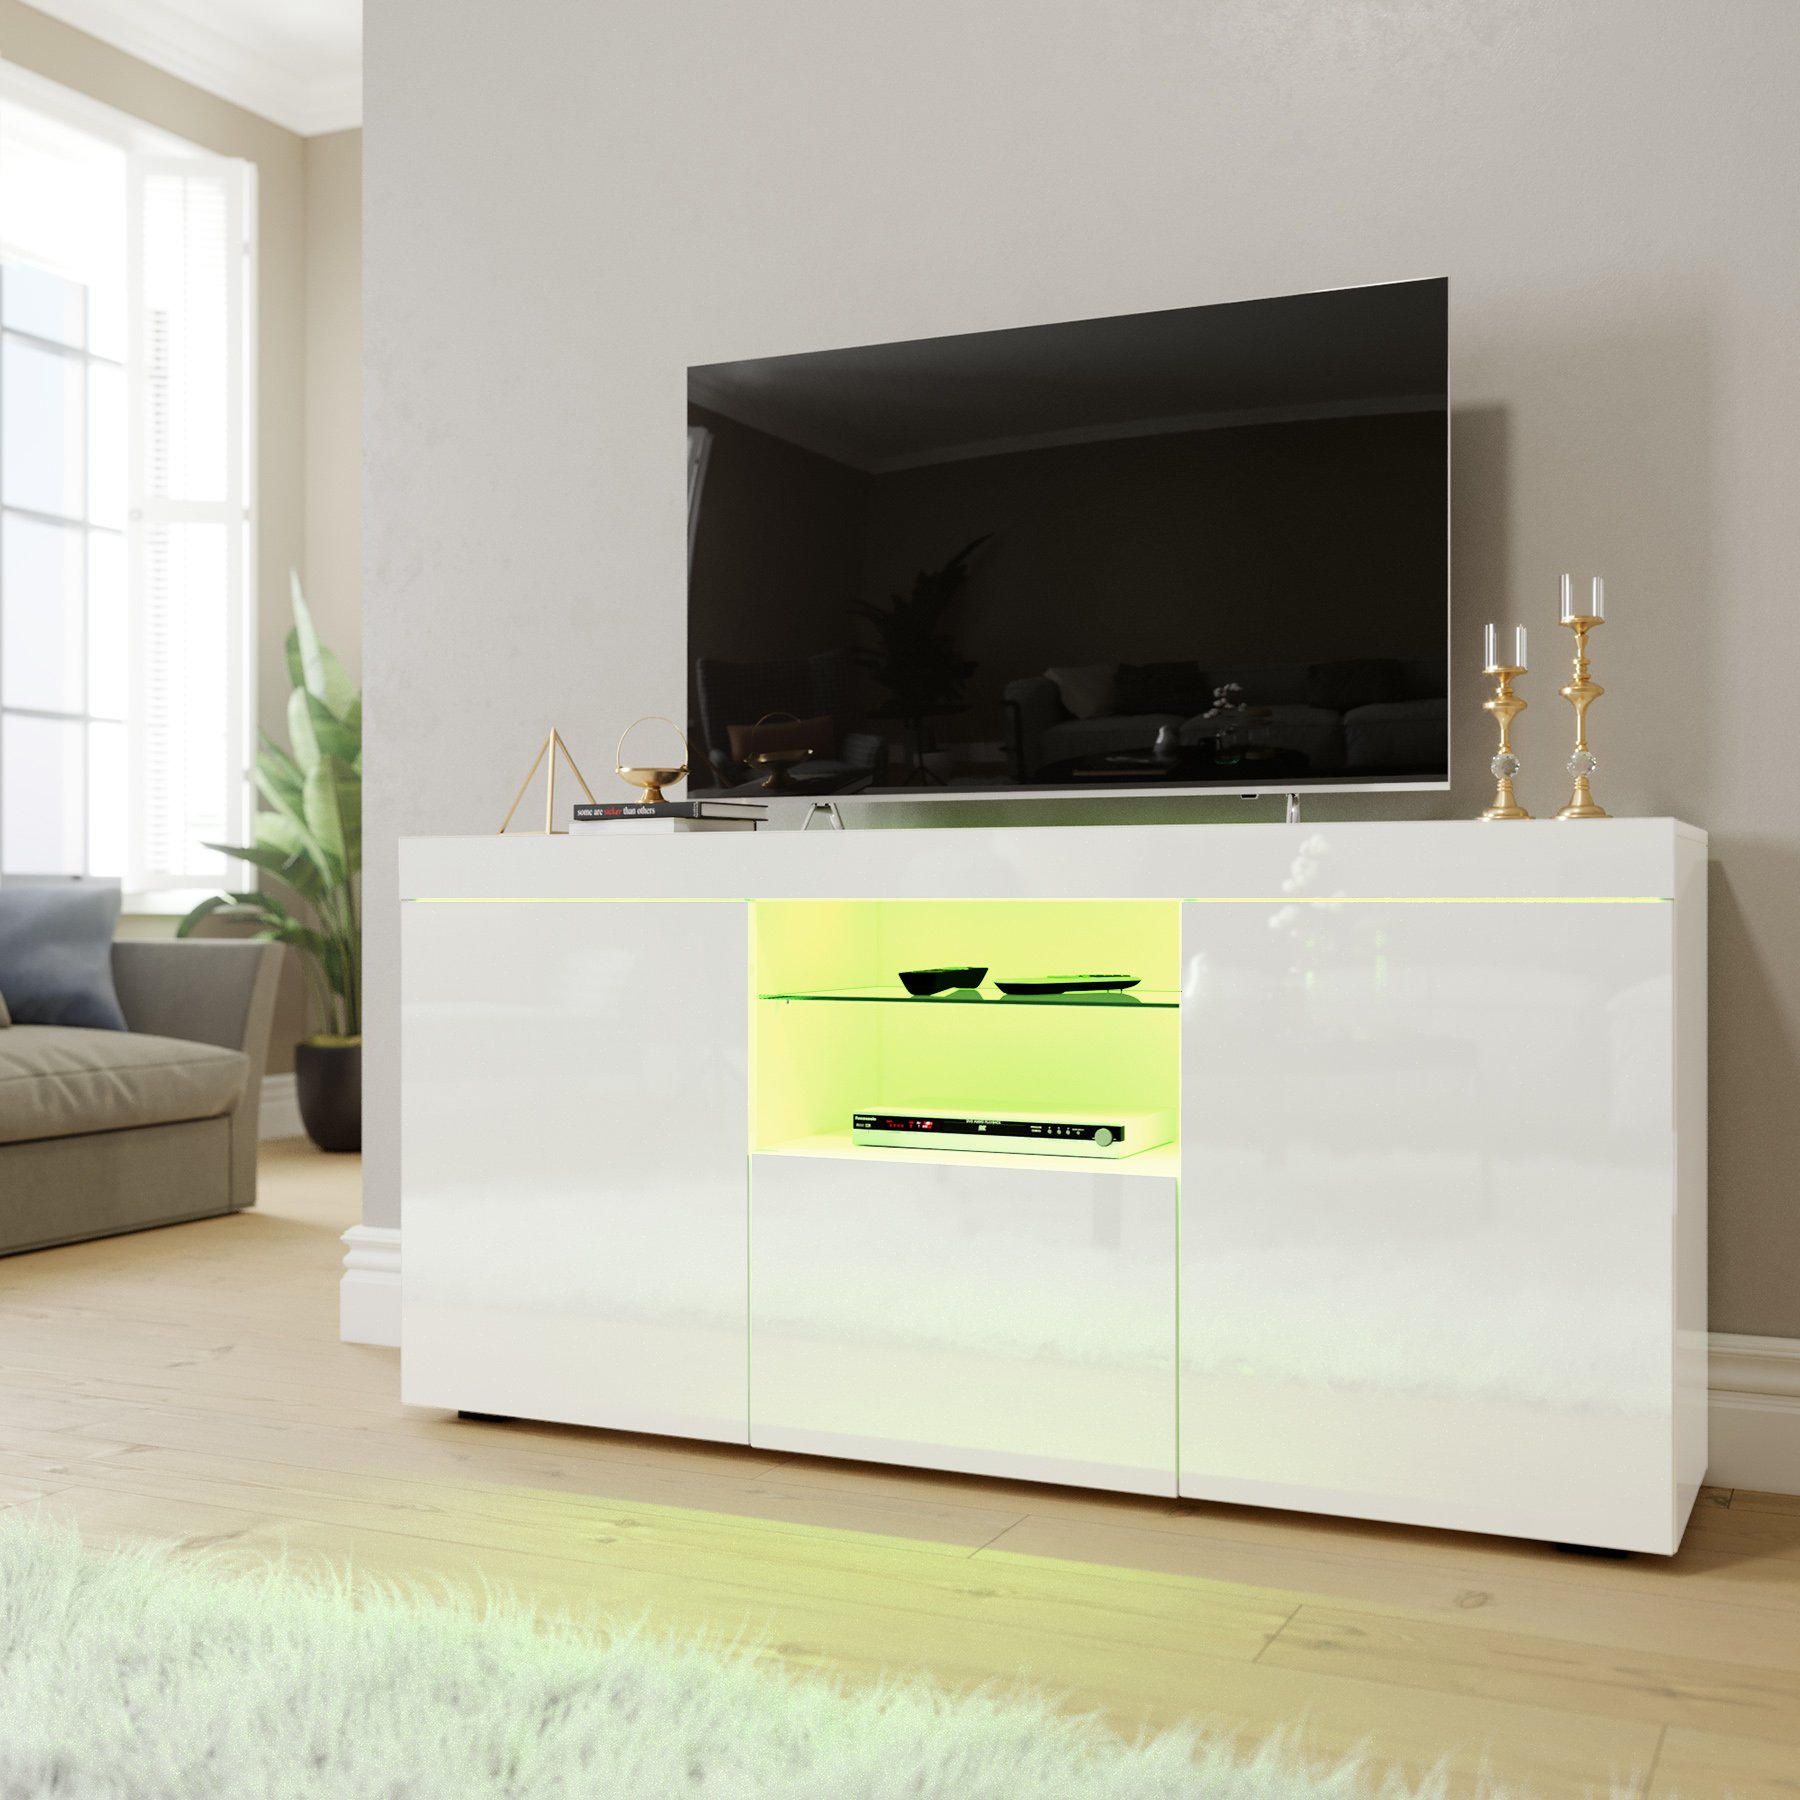 ELEGANT 1350mm TV Stand Unit MFC TV Cabinet High Gloss LED Lights Storage  Furniture Living Room Bedroom TV Stand for 32 40 43 50 55 60 65 inch 4k TV